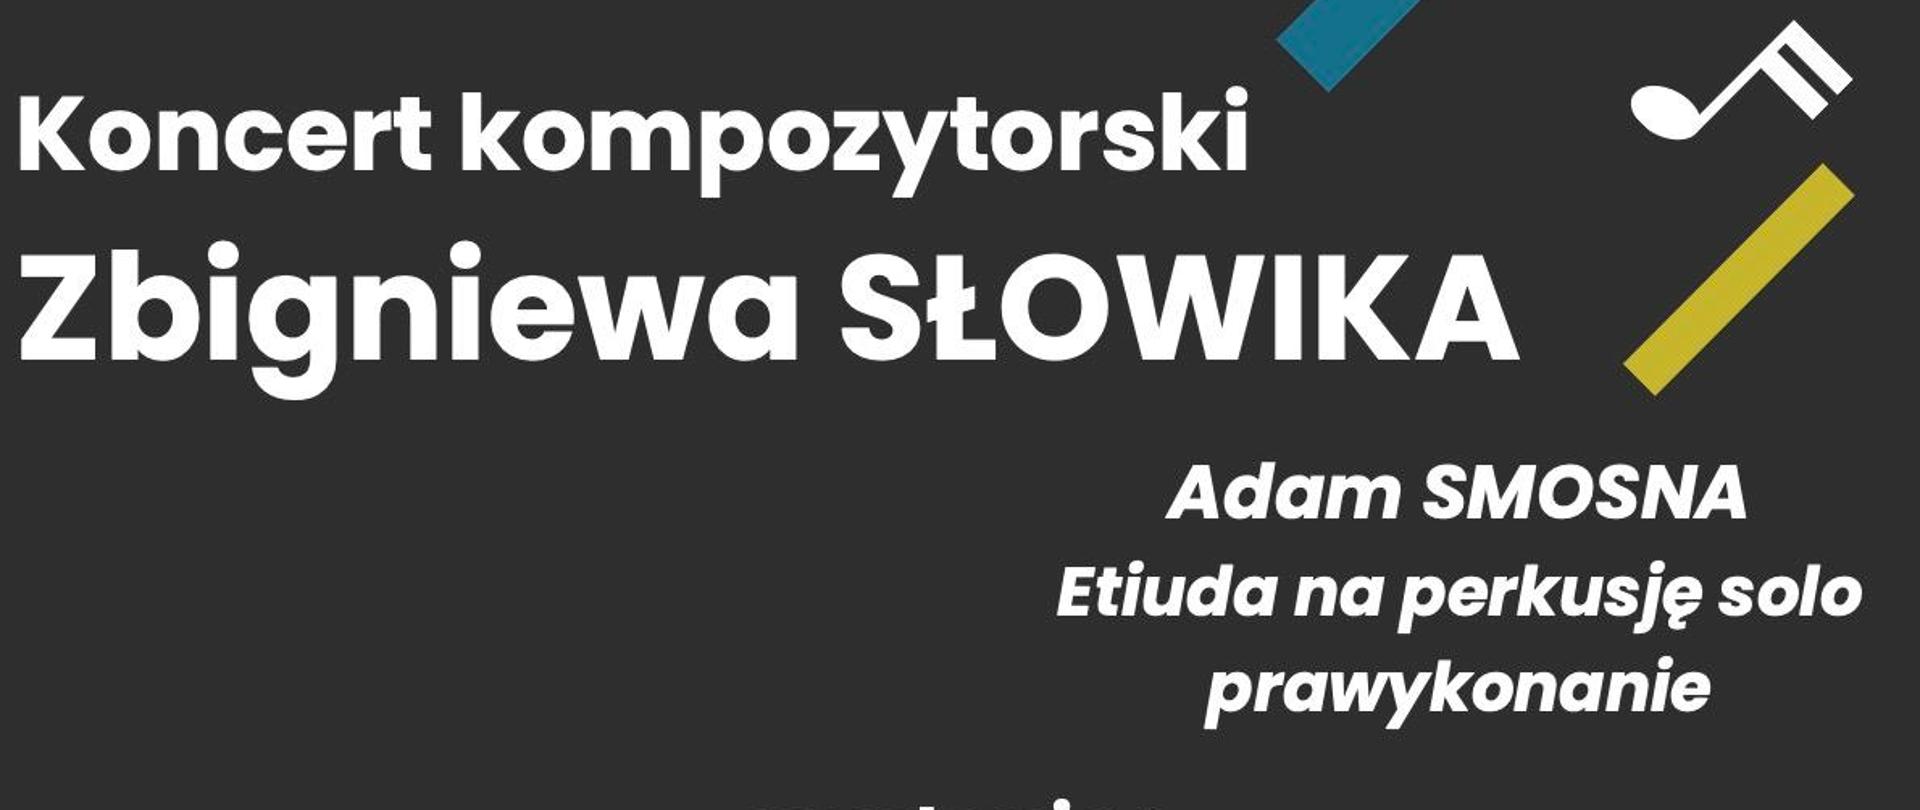 Plakat na czarnym tle, białe napisy, białe nutki, na dole loga, napis "koncert kompozytorski Zbigniewa Słowika"